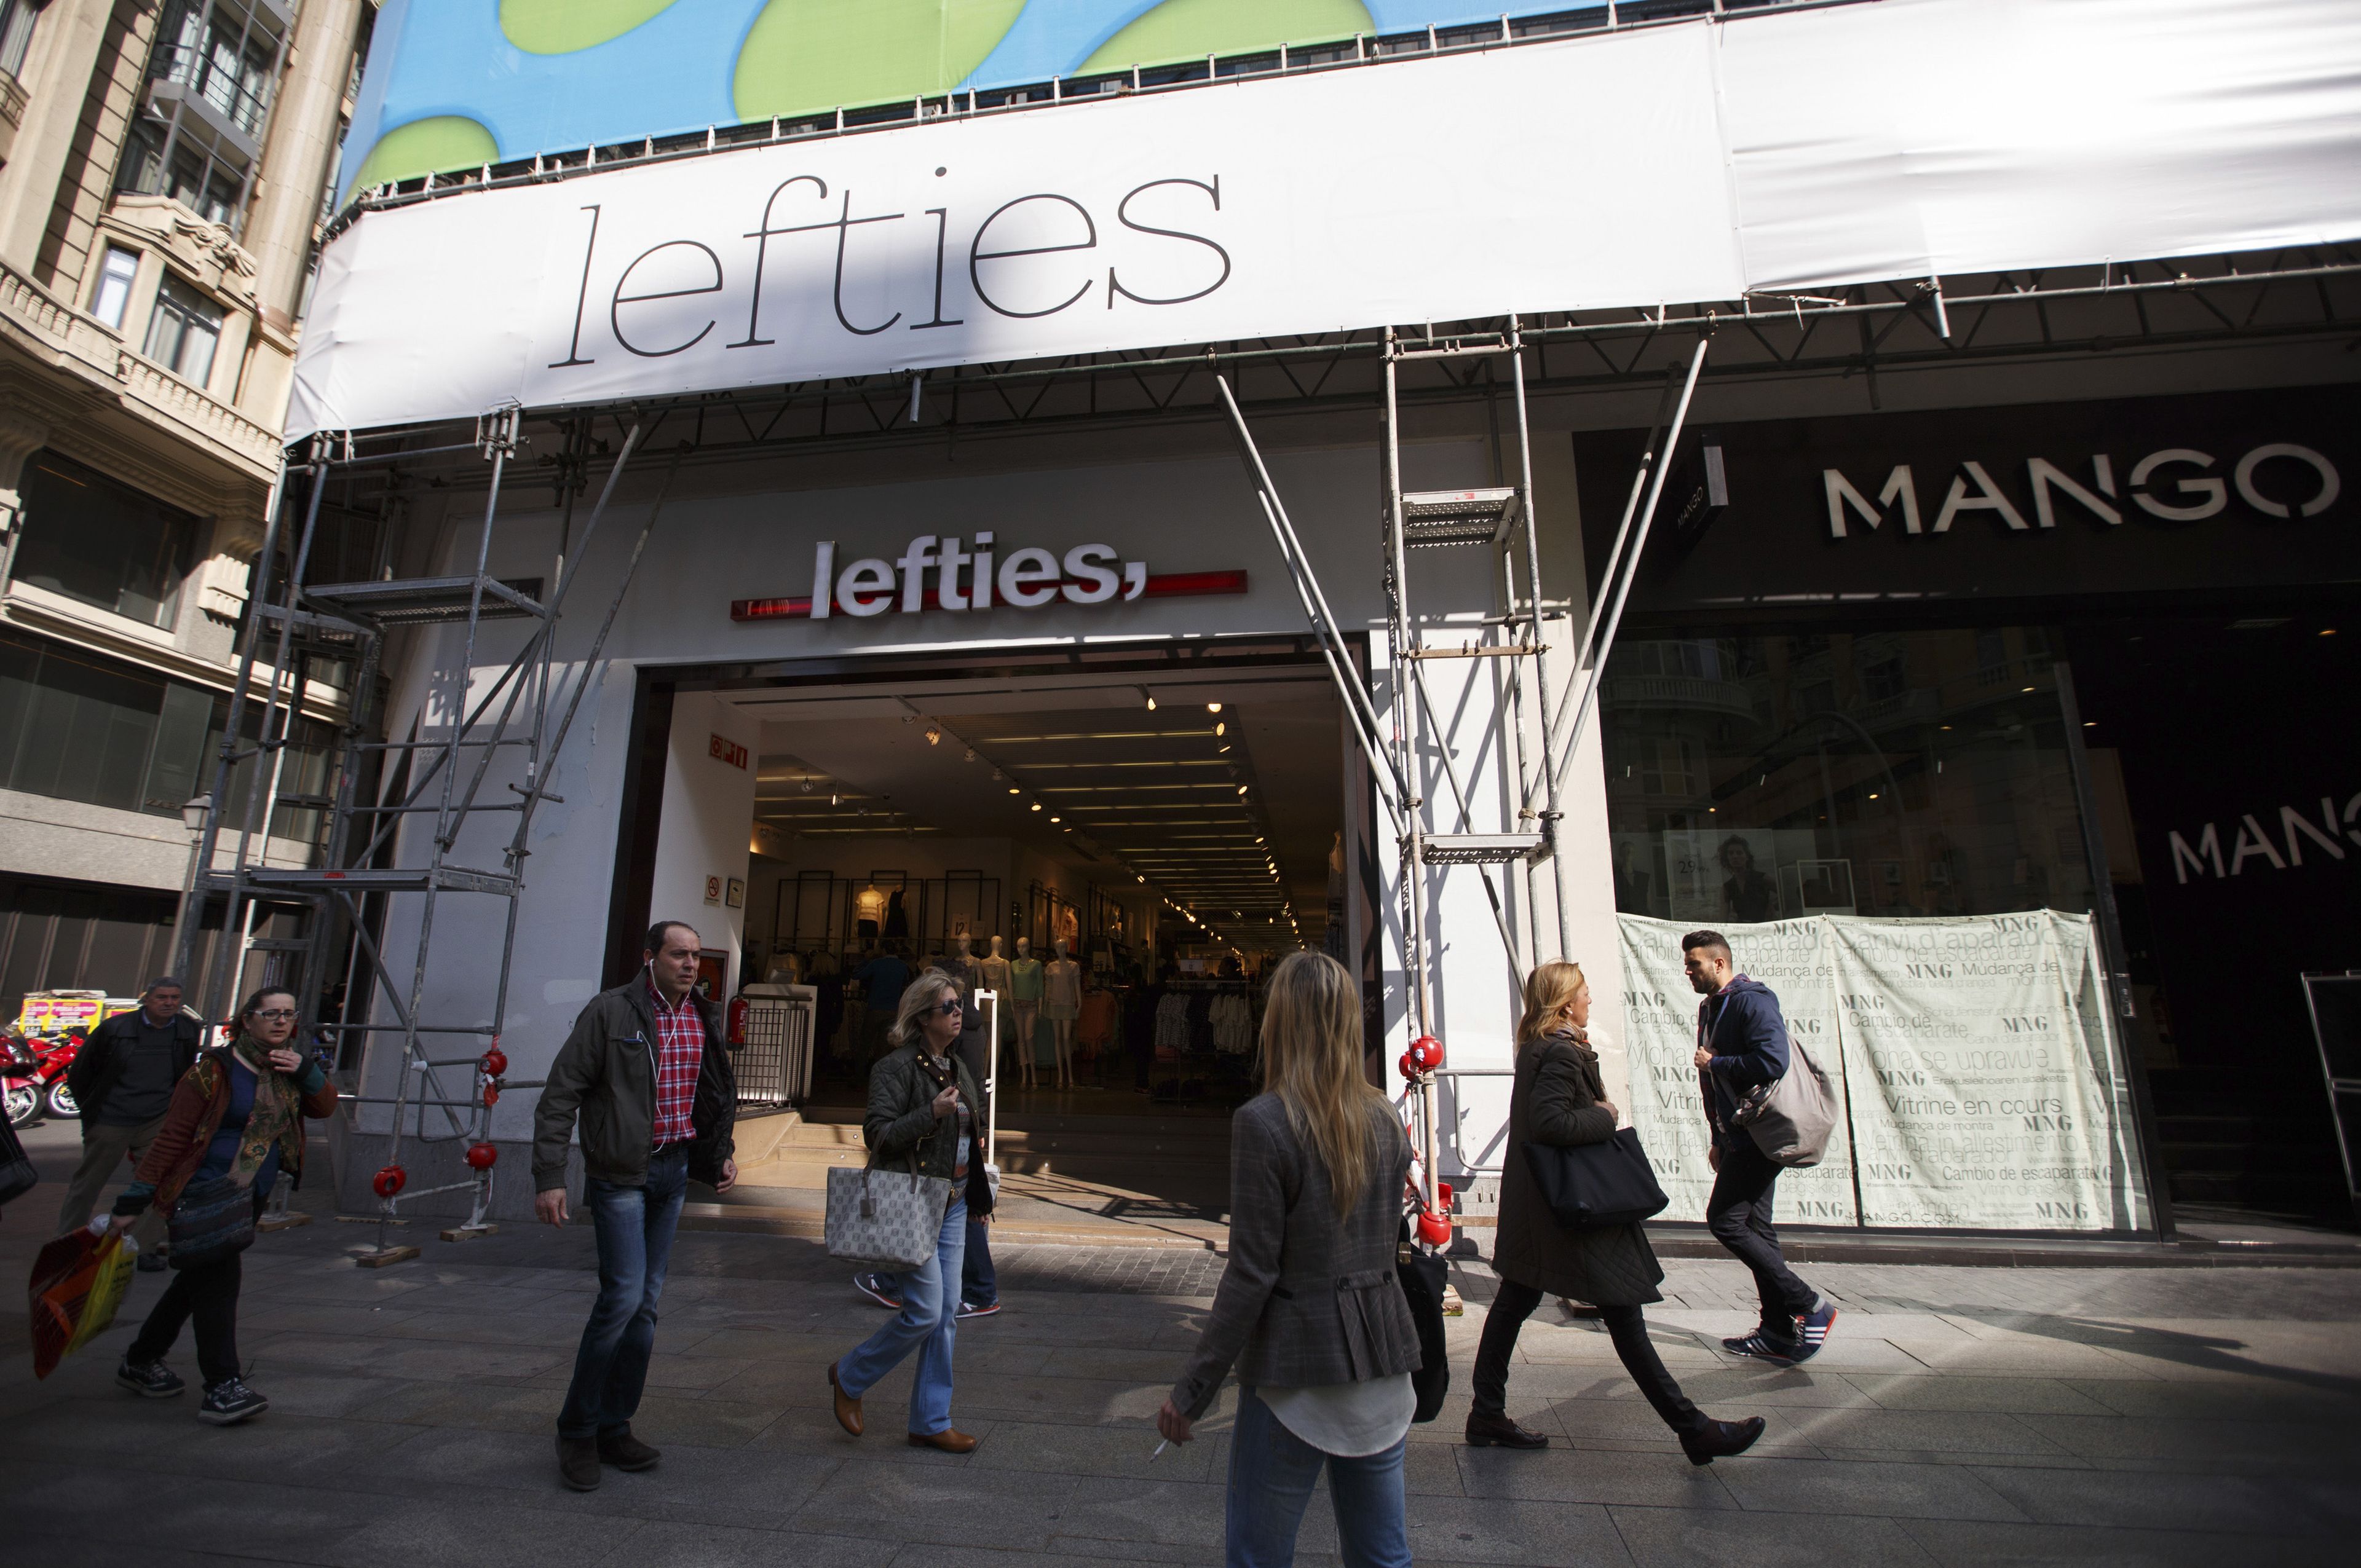 Una tienda de Lefties al lado de una tienda de Mango en una calle de Madrid